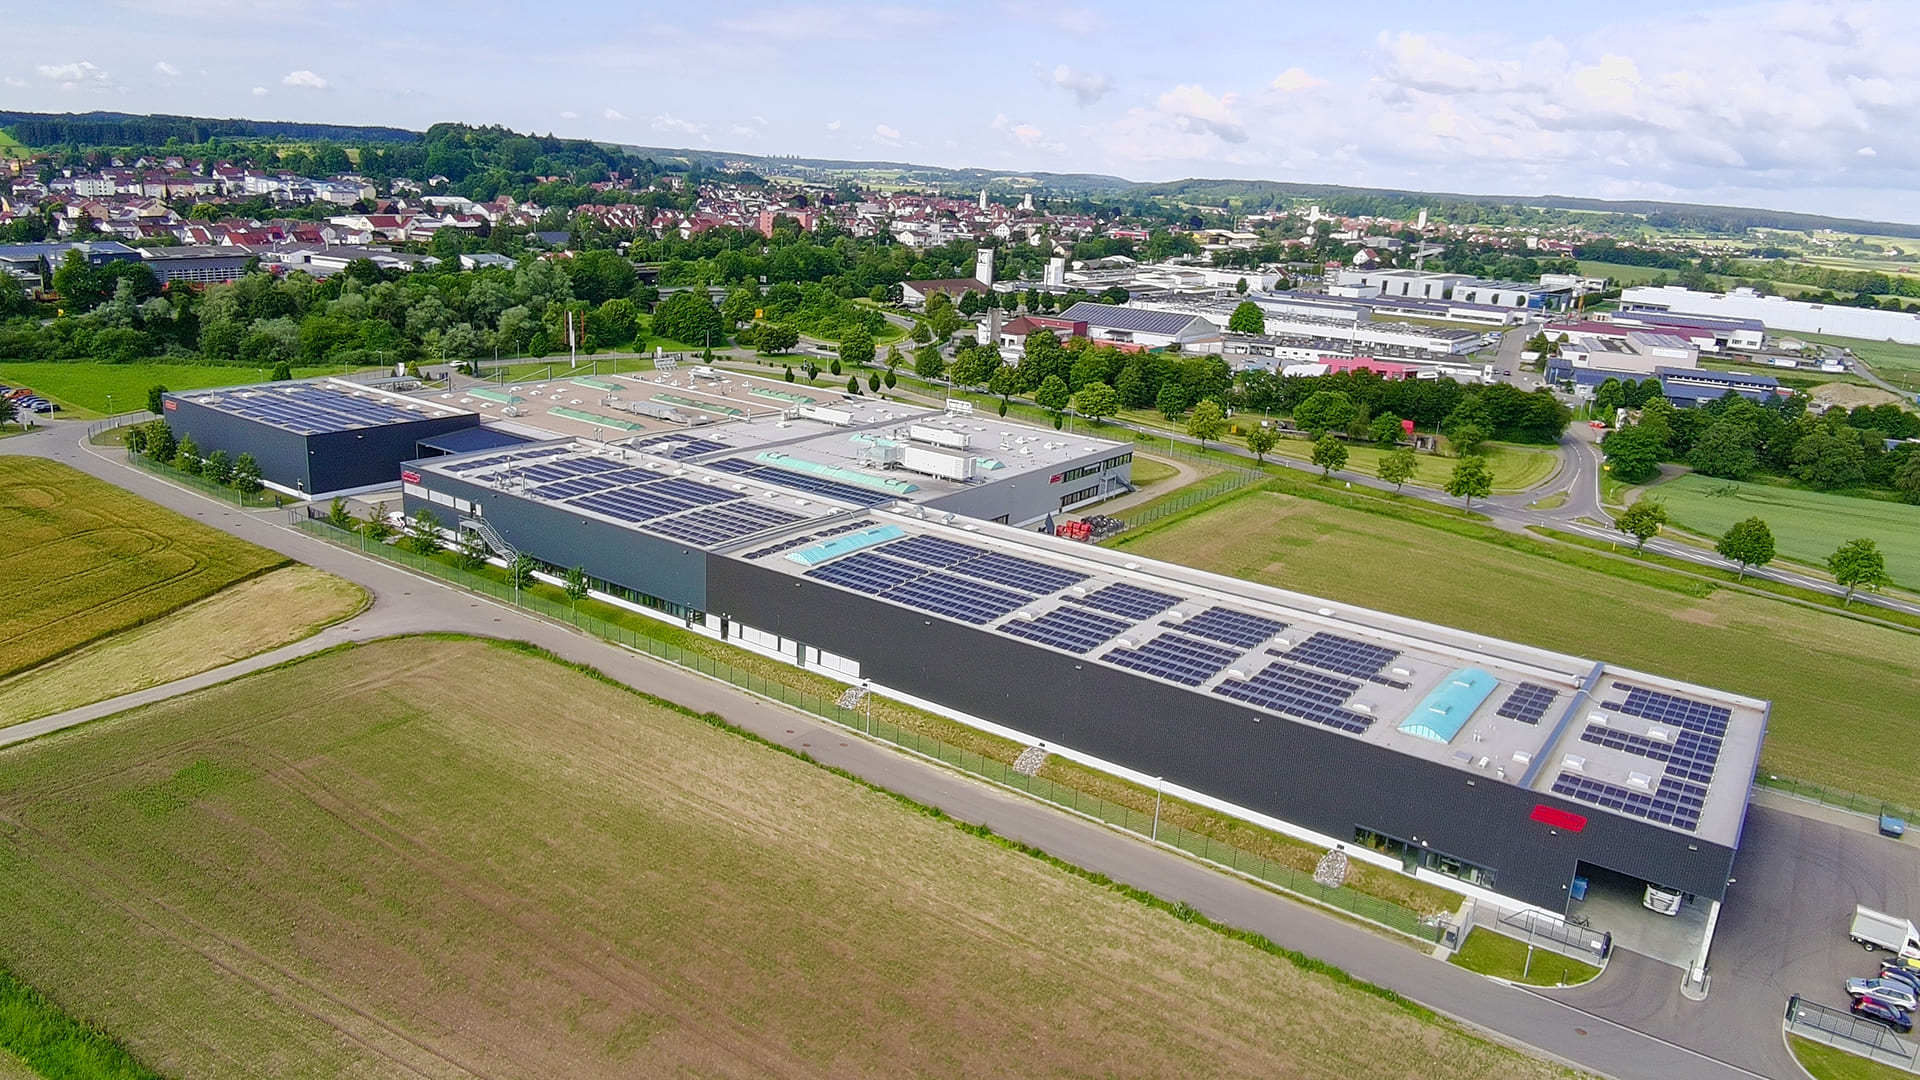 Neue Groß-Photovoltaikanlage auf dem Firmendach von Schlösser in Mengen